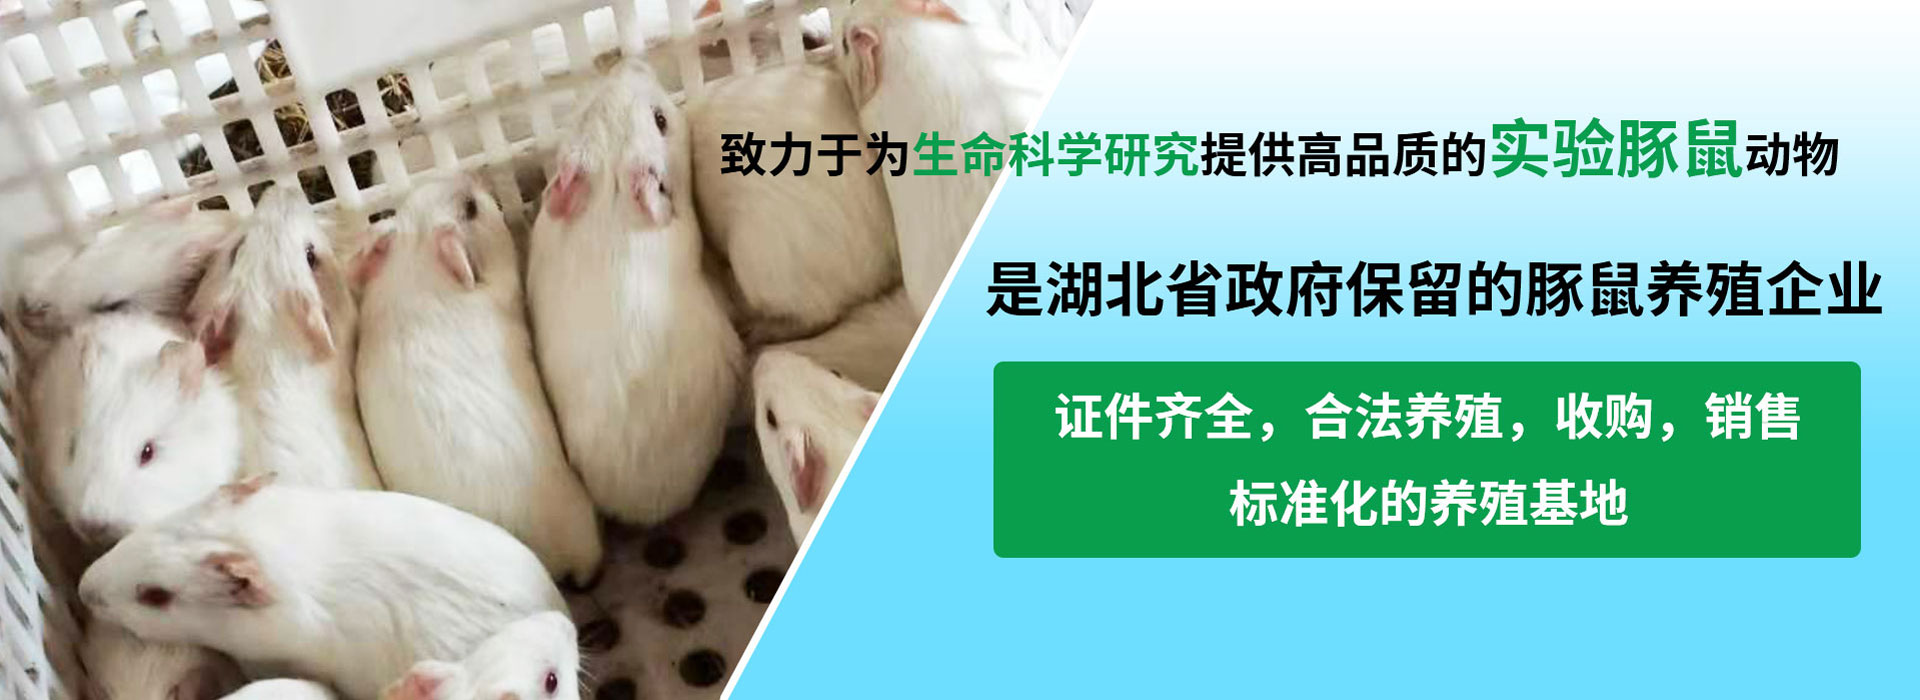 实验白豚鼠养殖,白豚鼠养殖培训,白豚鼠养殖技术